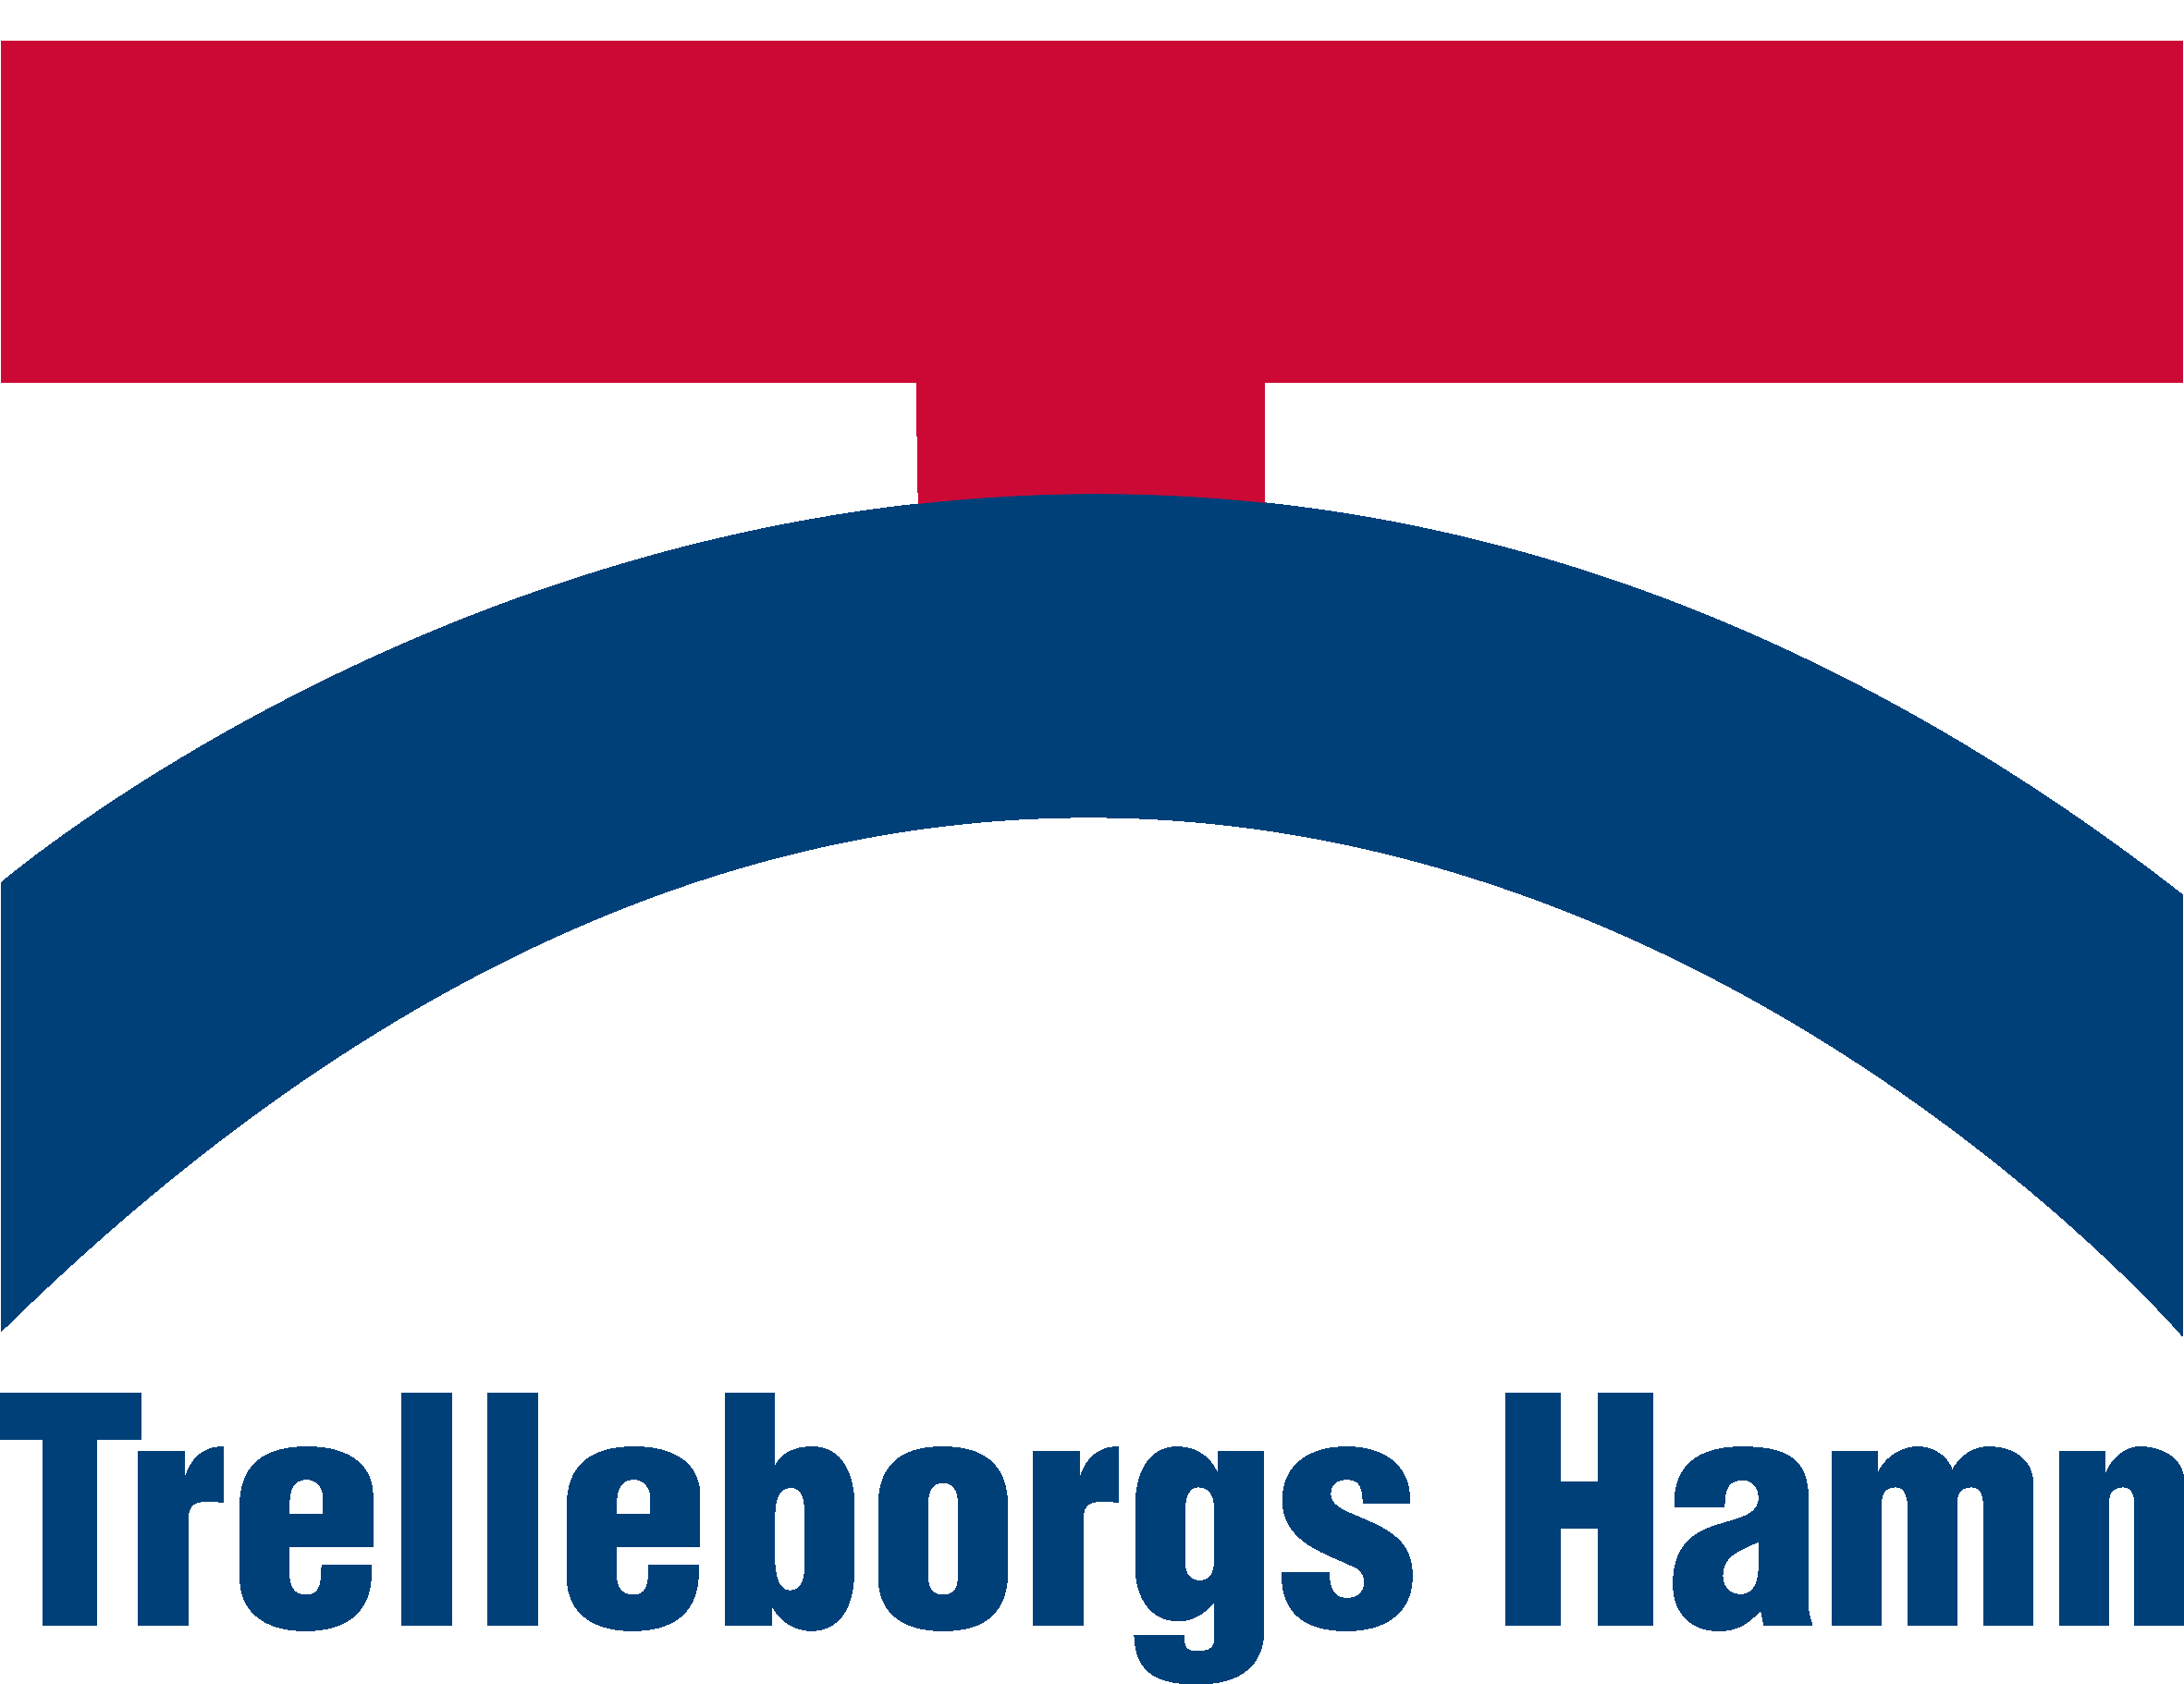 I samarbete med Trelleborgs Hamn